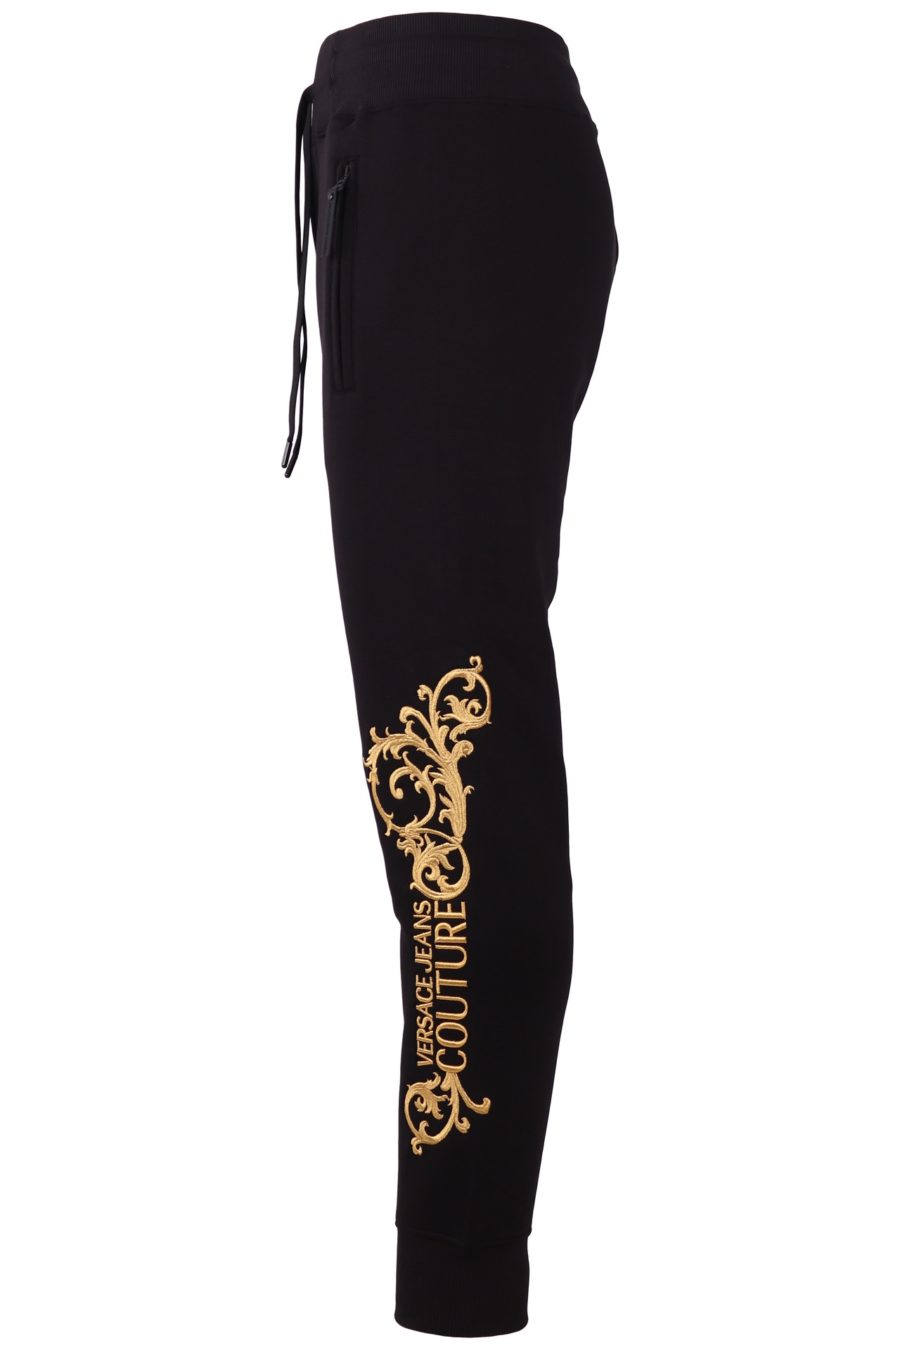 Trainingshose Versace Jeans Couture schwarz mit gesticktem Logo - 381bdd3285dbb41c149b6b1346cacf7d5881401a